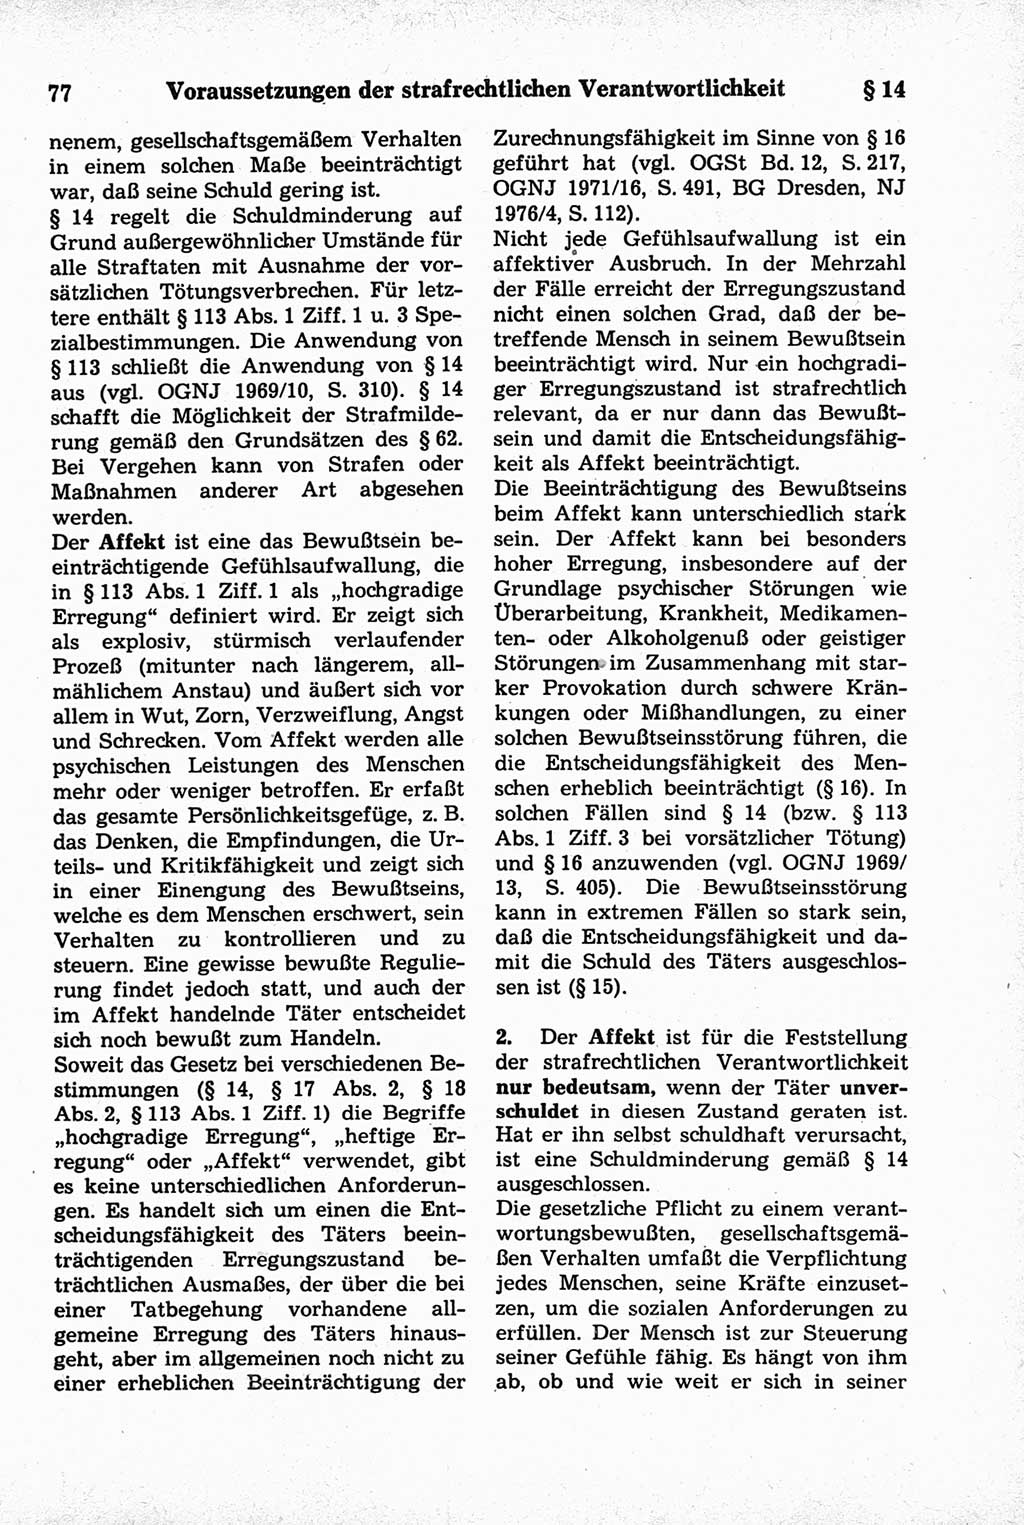 Strafrecht der Deutschen Demokratischen Republik (DDR), Kommentar zum Strafgesetzbuch (StGB) 1981, Seite 77 (Strafr. DDR Komm. StGB 1981, S. 77)